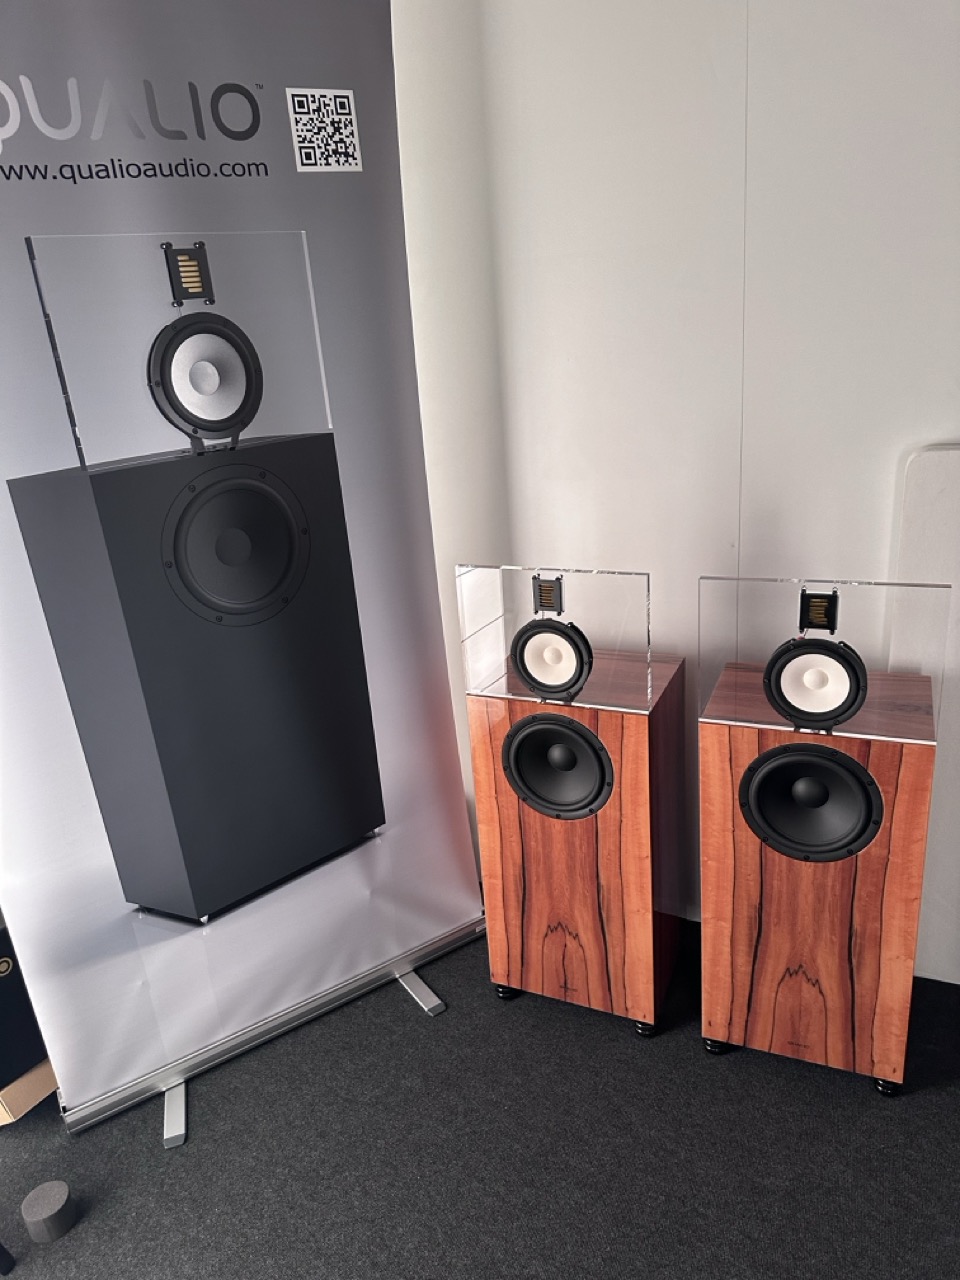 Cube Audio`s Qualio 3 way speaker sounded amazing. 